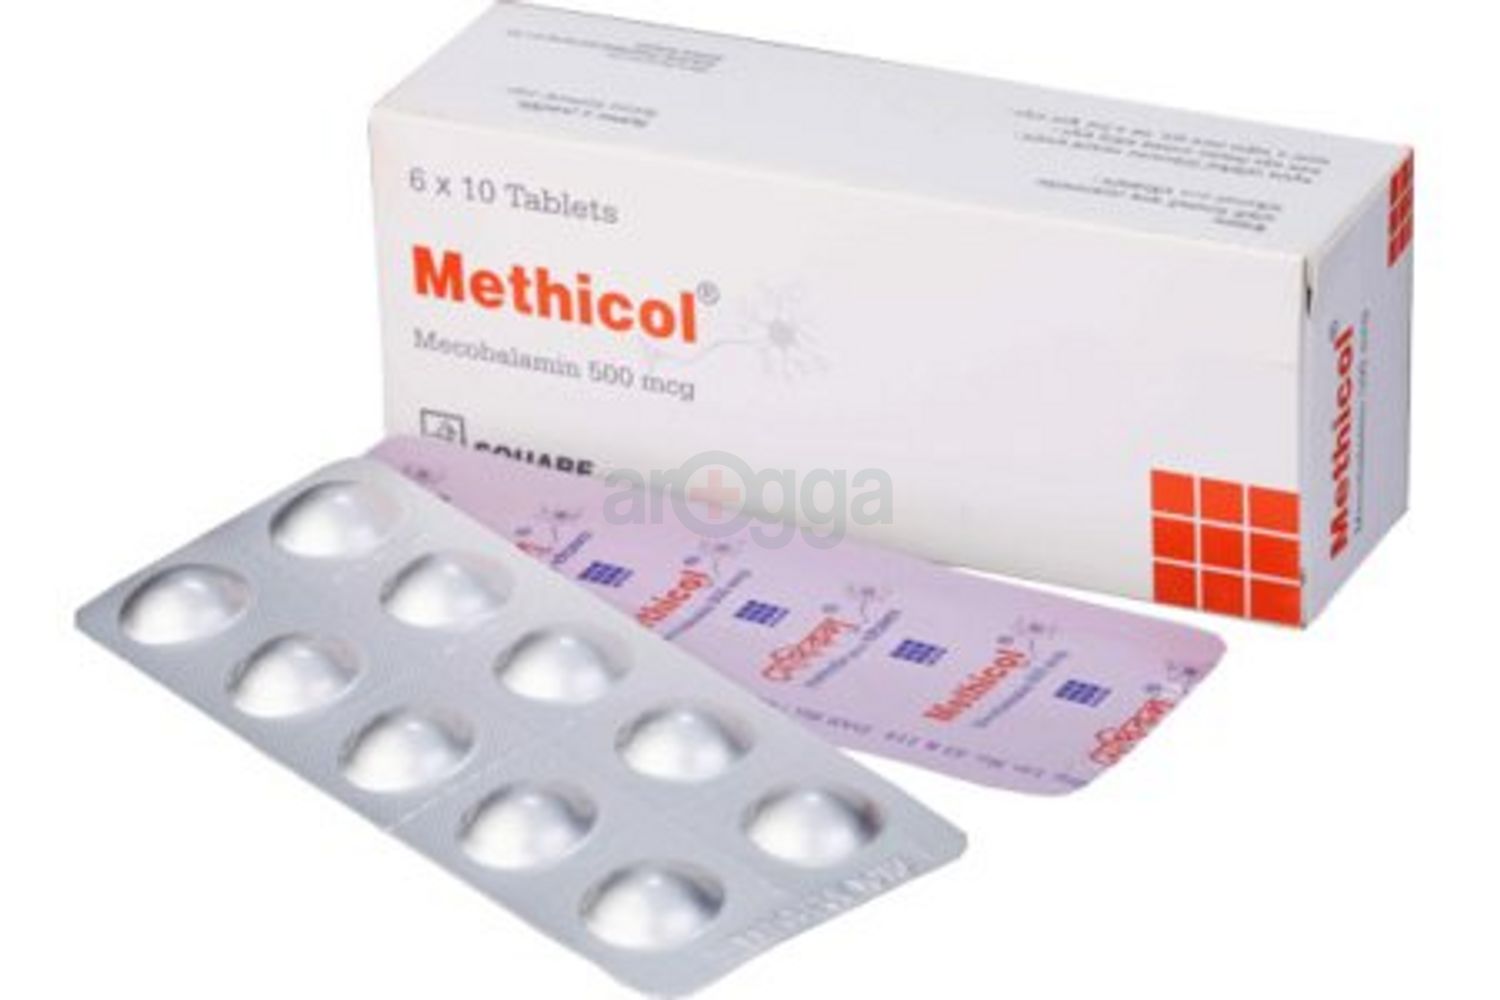 Methicol